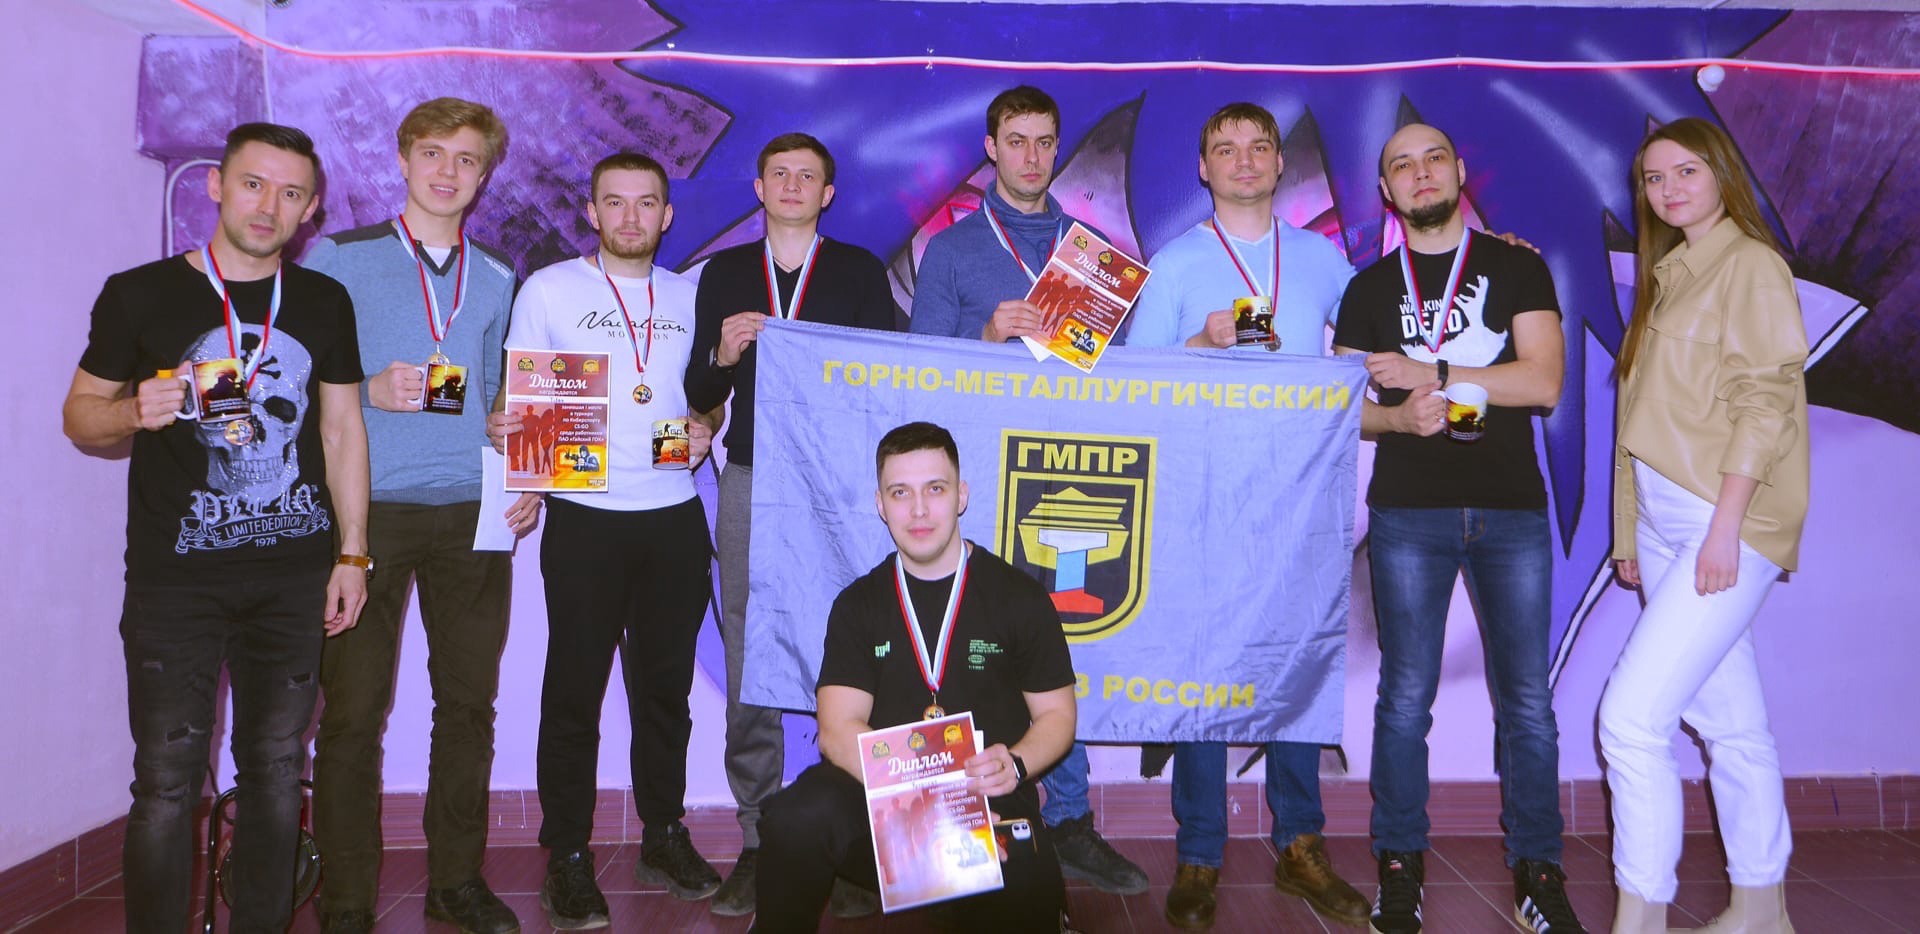 Комиссия по работе с молодёжью при Профкоме АО «Гайский Гок» ГМПР впервые провела турнир по киберспорту